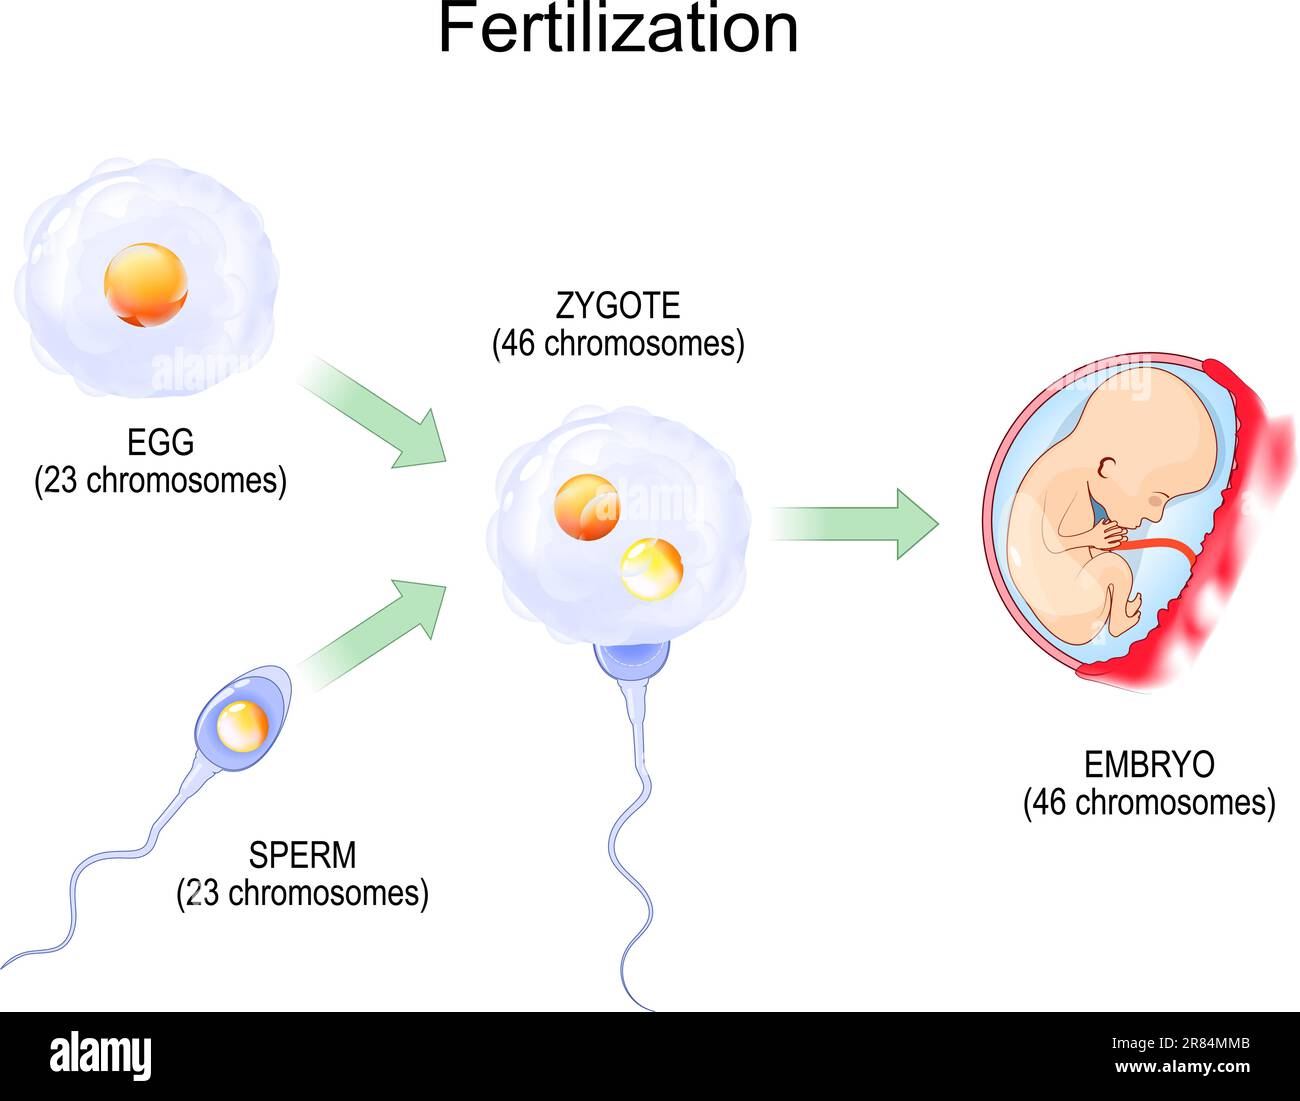 Concimazione. Concimazione. Lo zigote è uovo più sperma. Fusione di due gameti aploidi per formare uno zigote diploide poi embrione. illustrazione vettoriale. Biolo Illustrazione Vettoriale